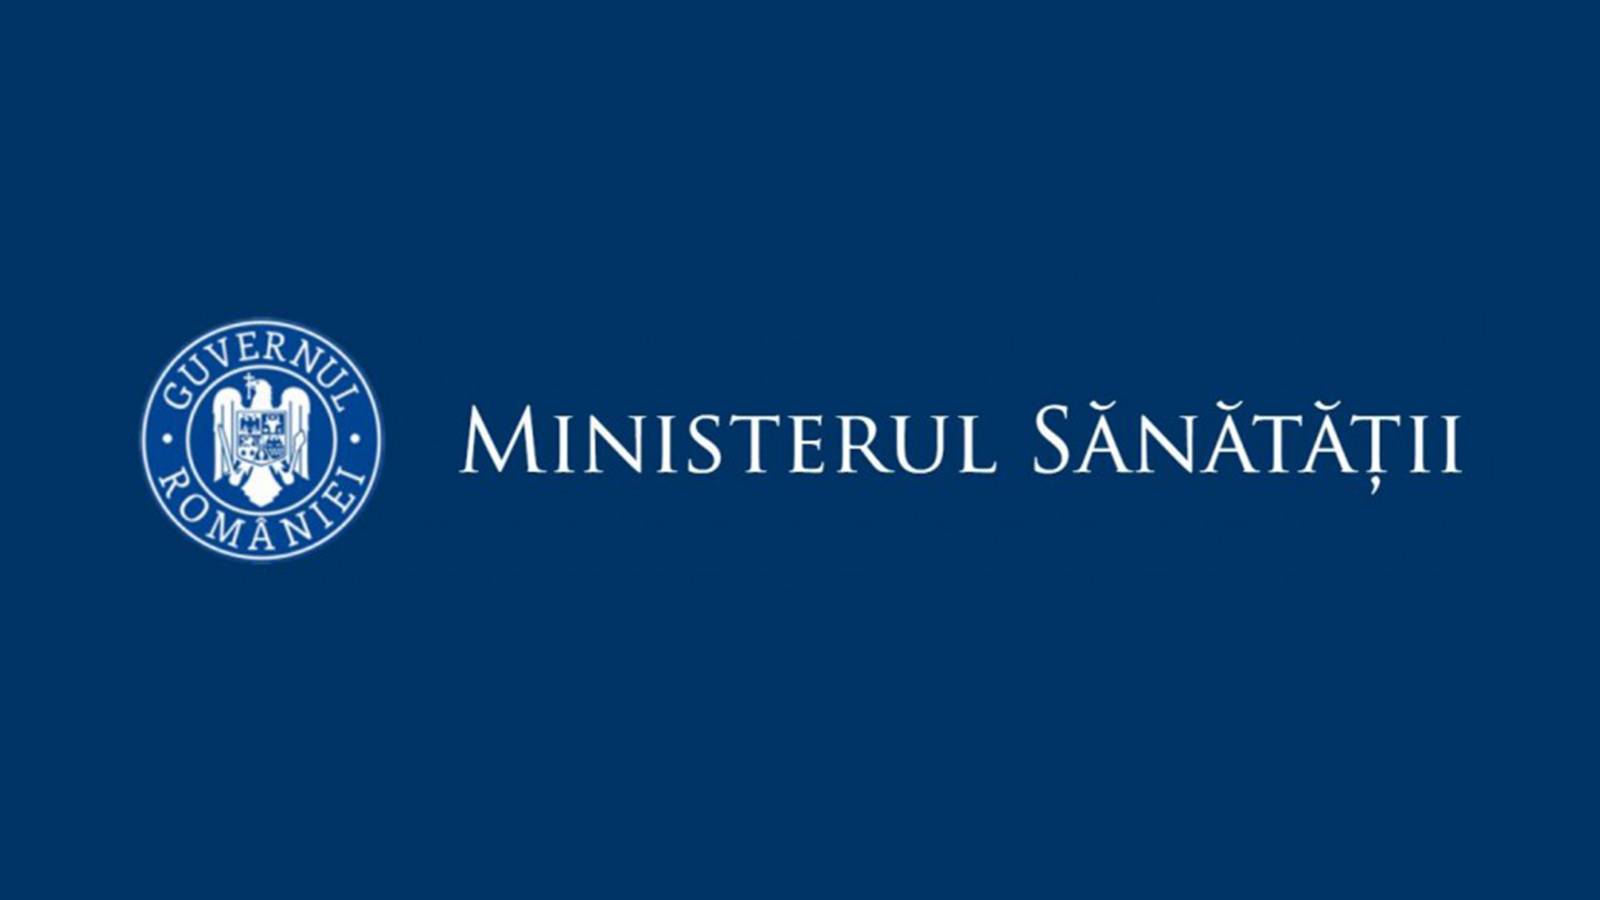 Ministerul Sanatatii Cererea Milioane Romani Tara